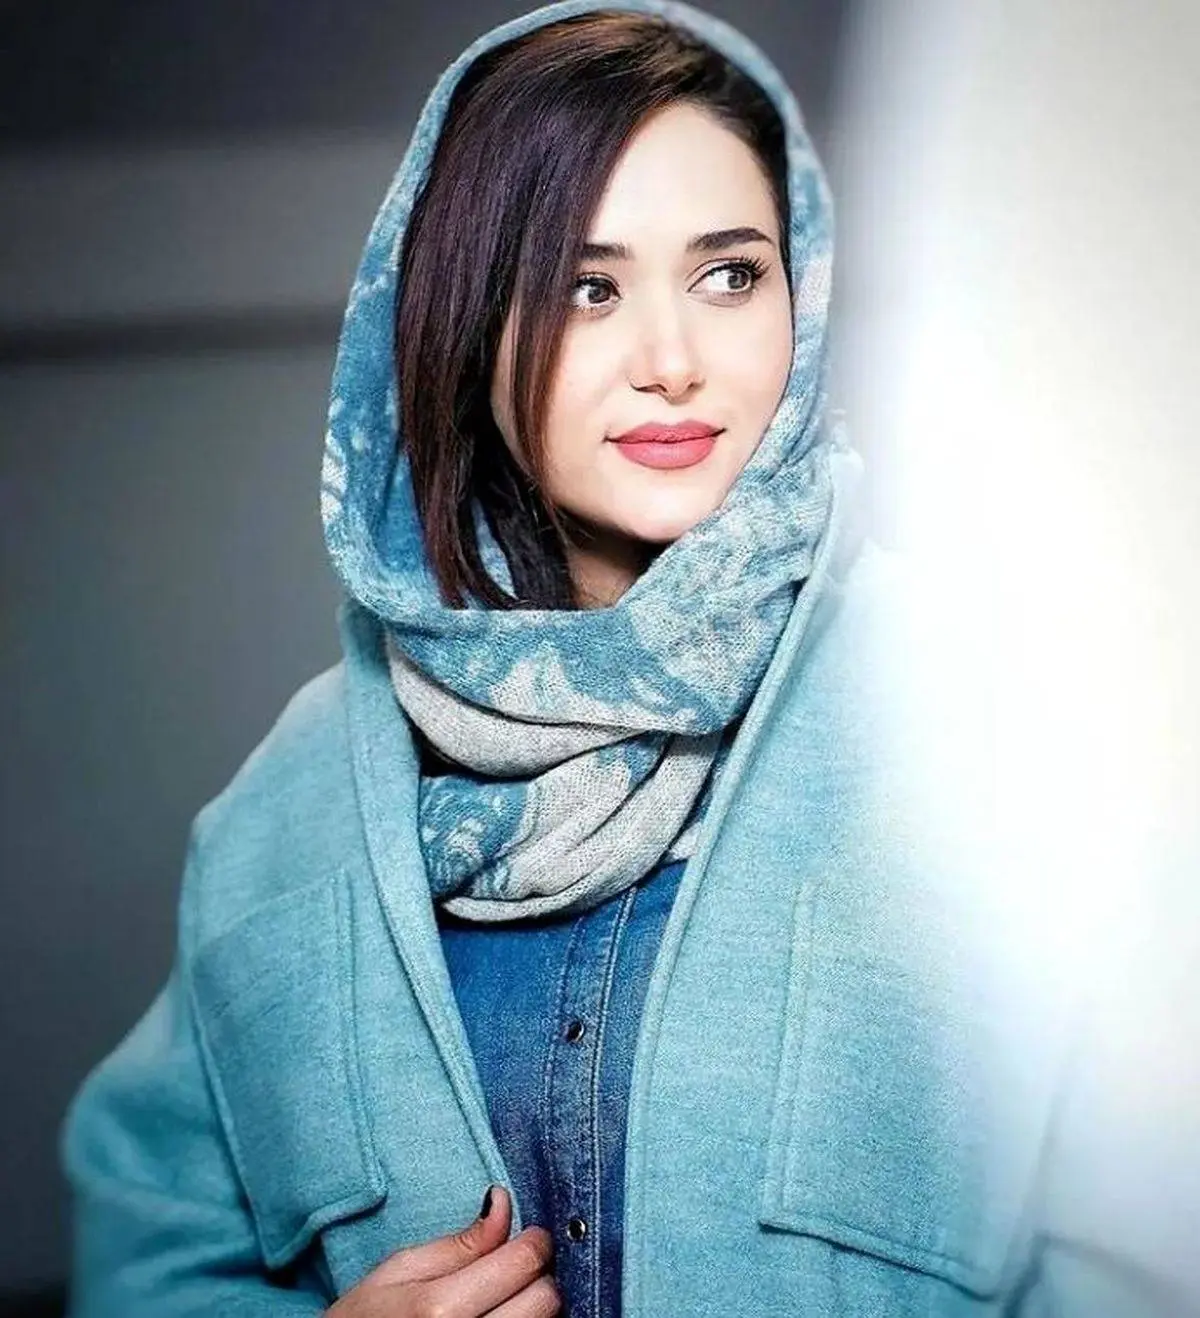 لباس جدید بازیگر سریال جیران همه را شوکه کرد | پریناز ایزدیار در این عکسش مثل ماه می درخشد